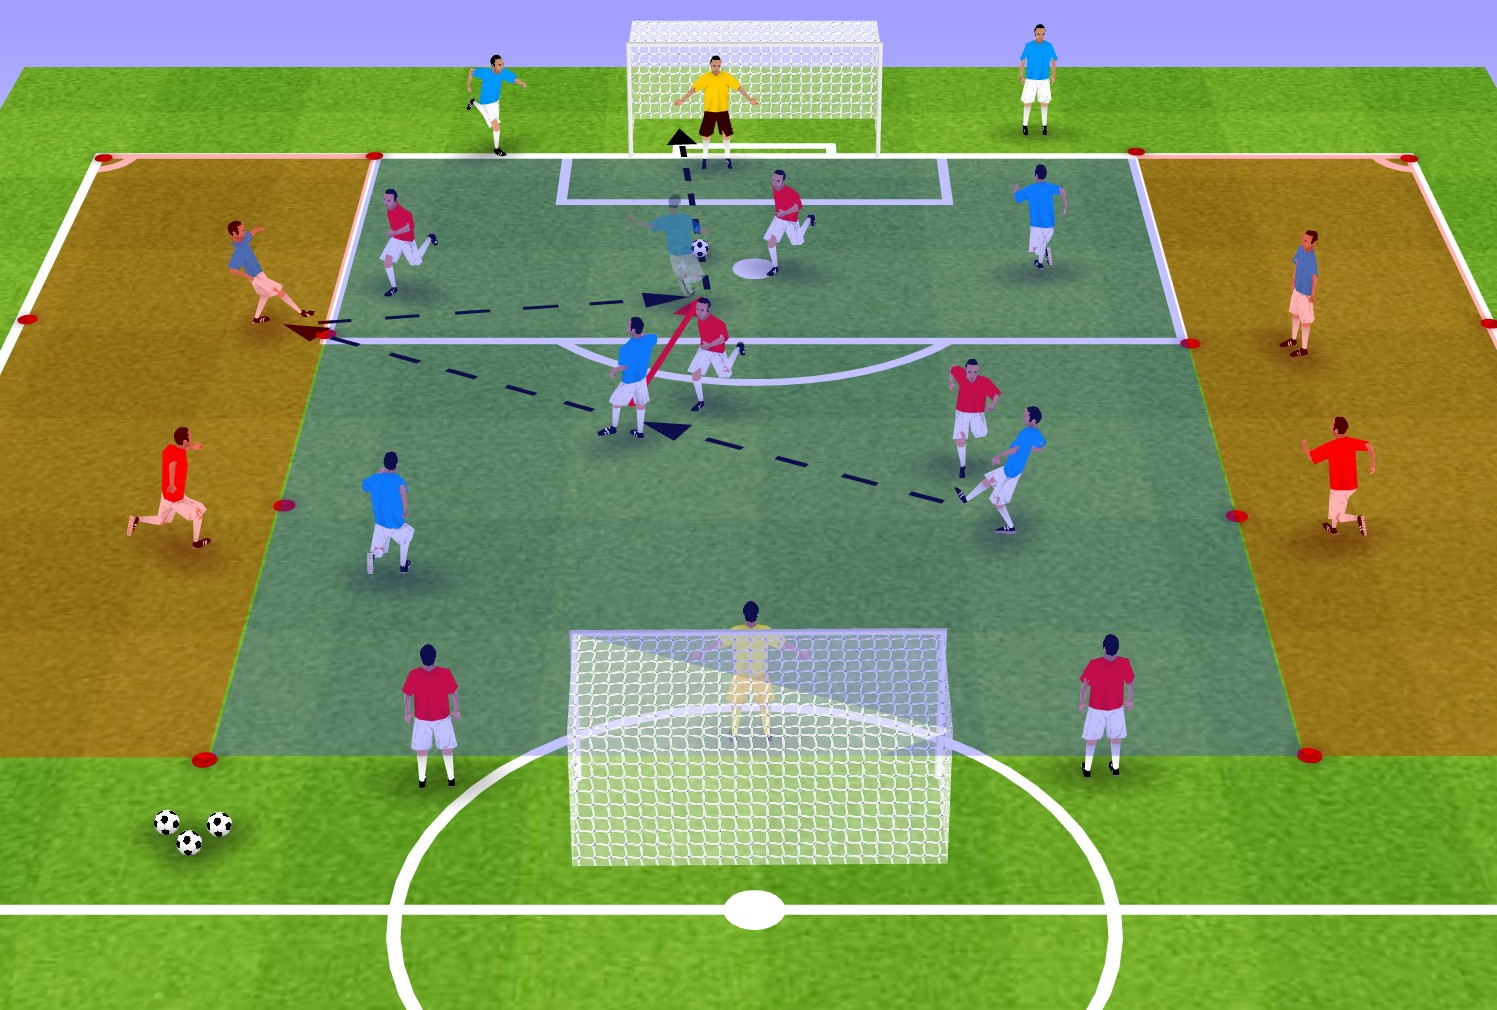 足球教案:迅速提升球员射门能力的四种训练方法